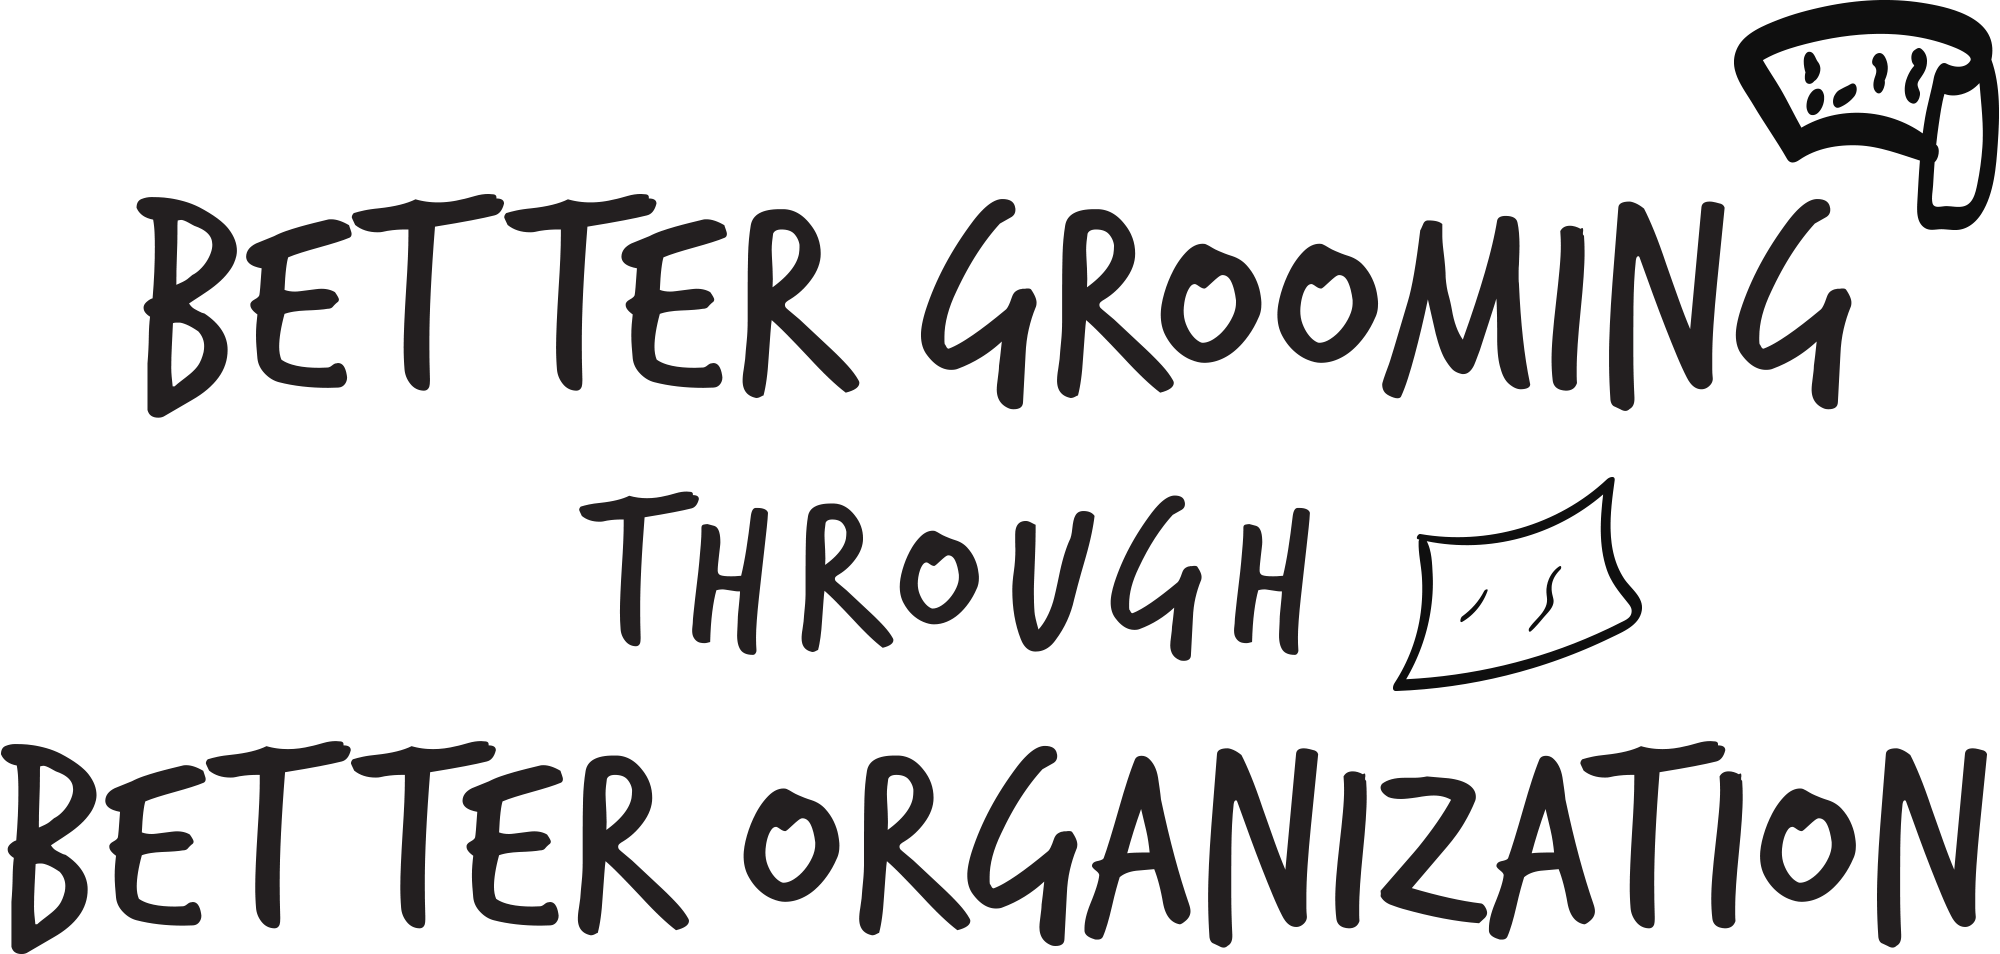 Better Grooming Through Better Organization